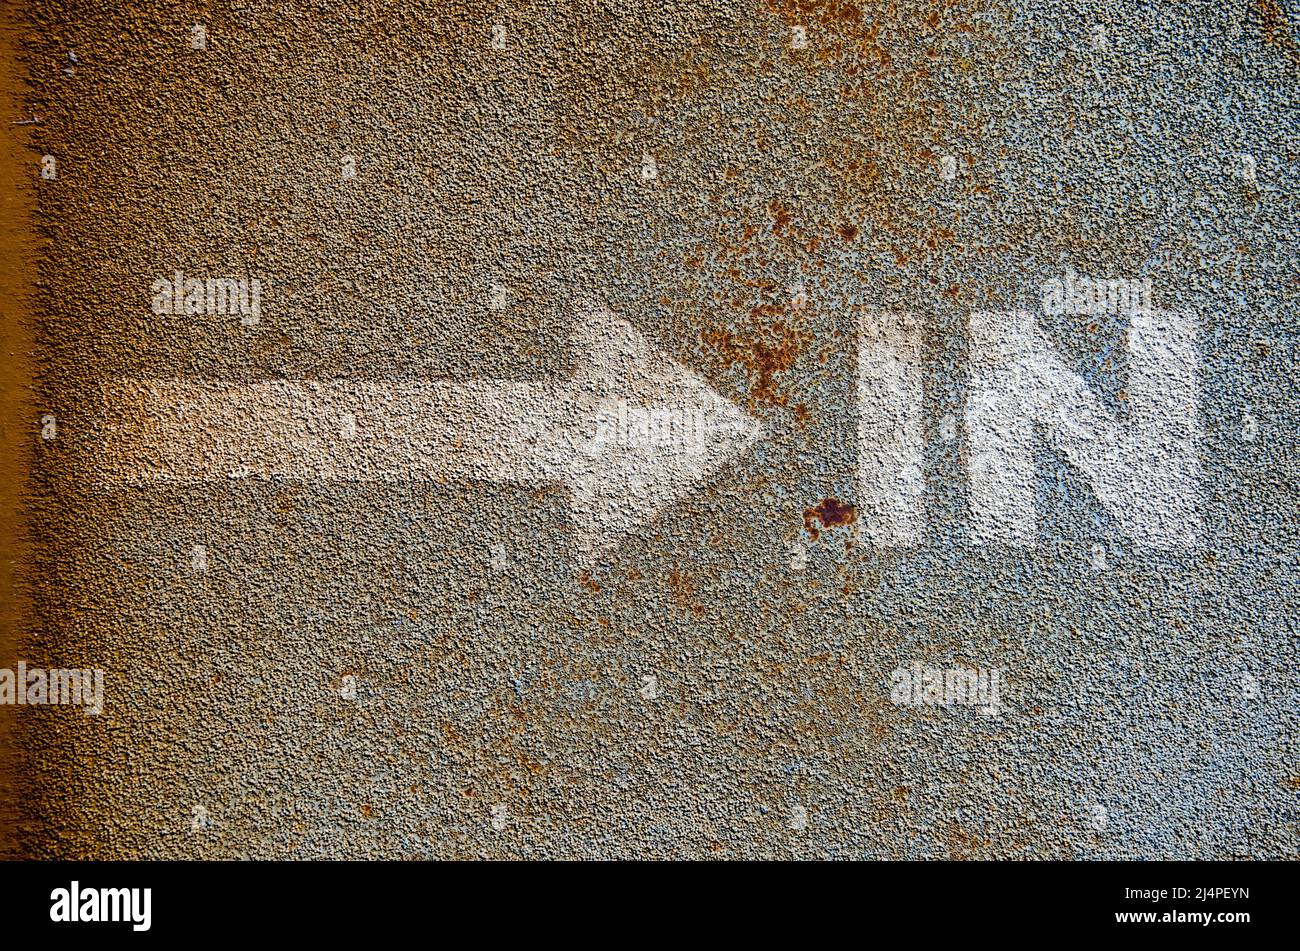 Flecha y la palabra 'in' pintada en blanco en la capa superior de asfalto de un pontón de acero Foto de stock